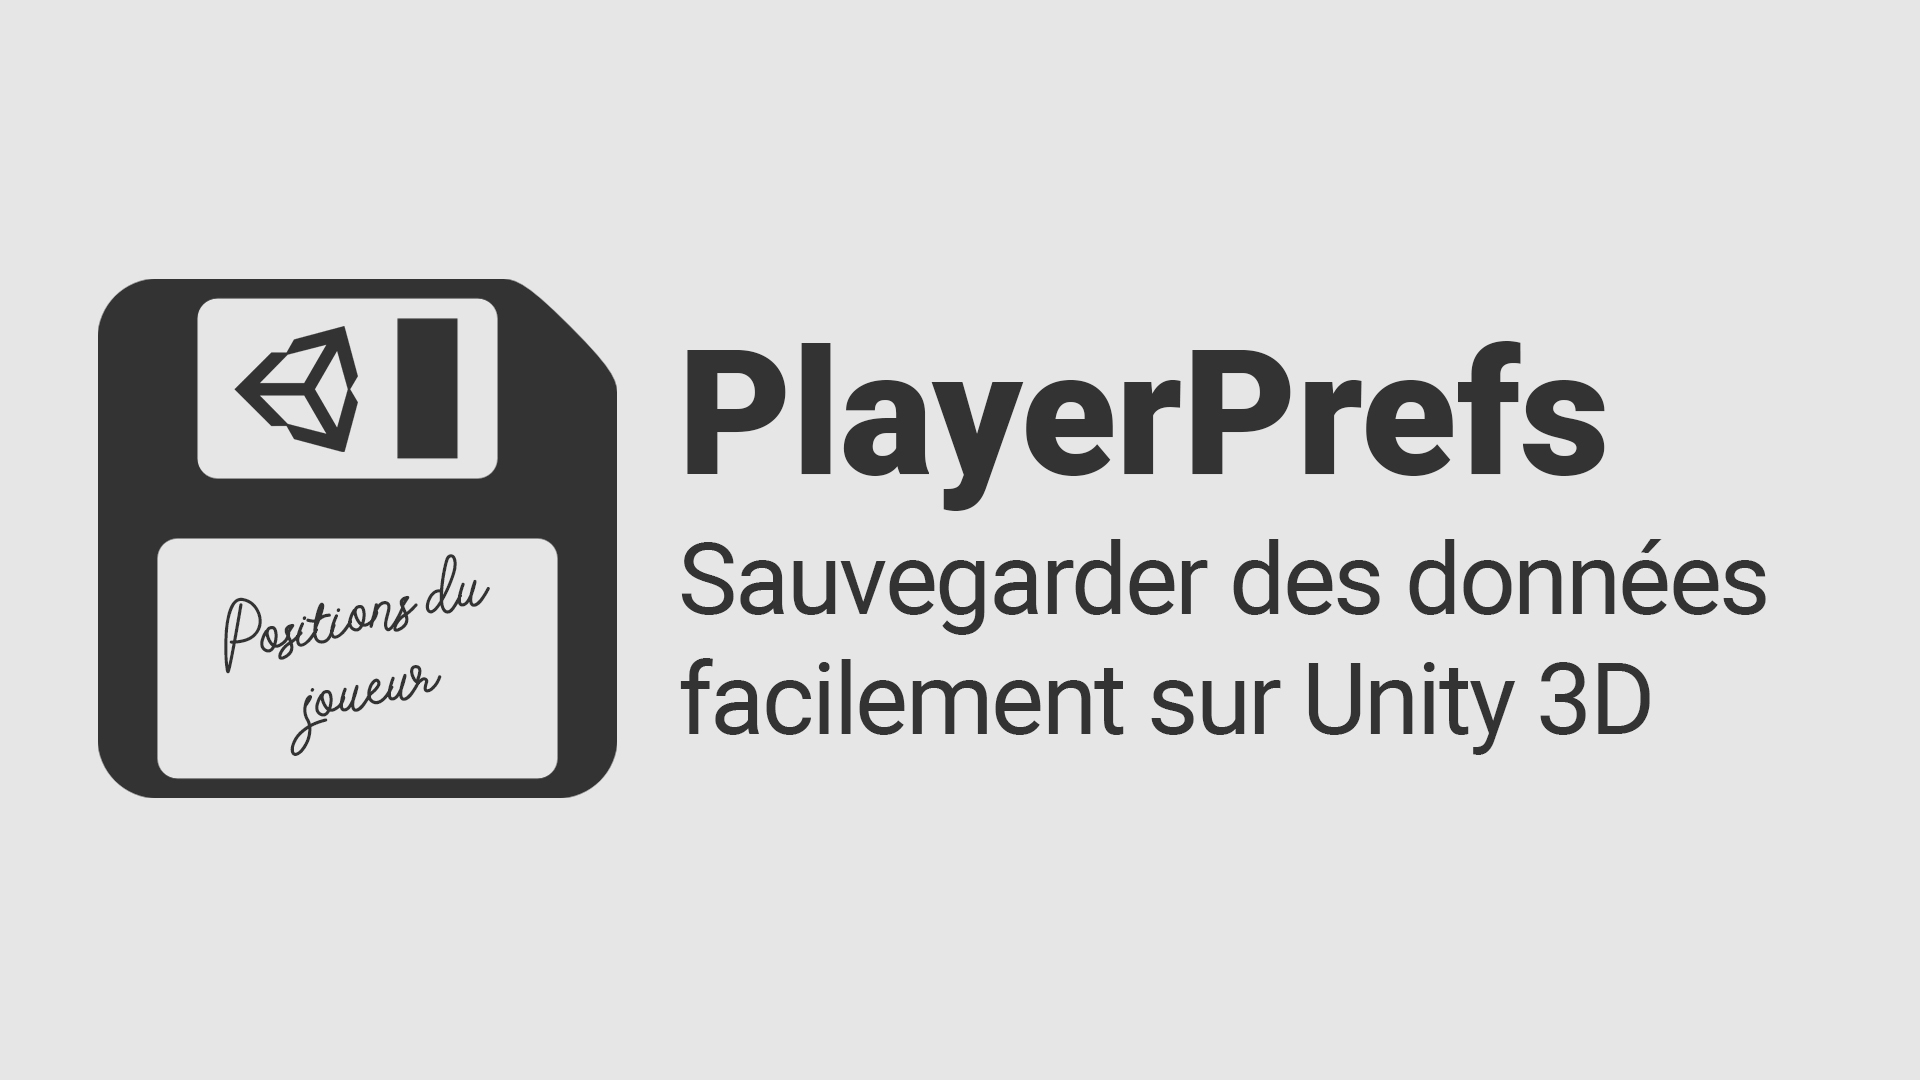 Sauvegarder des donnÃ©es sur Unity 3D avec les PlayerPrefs